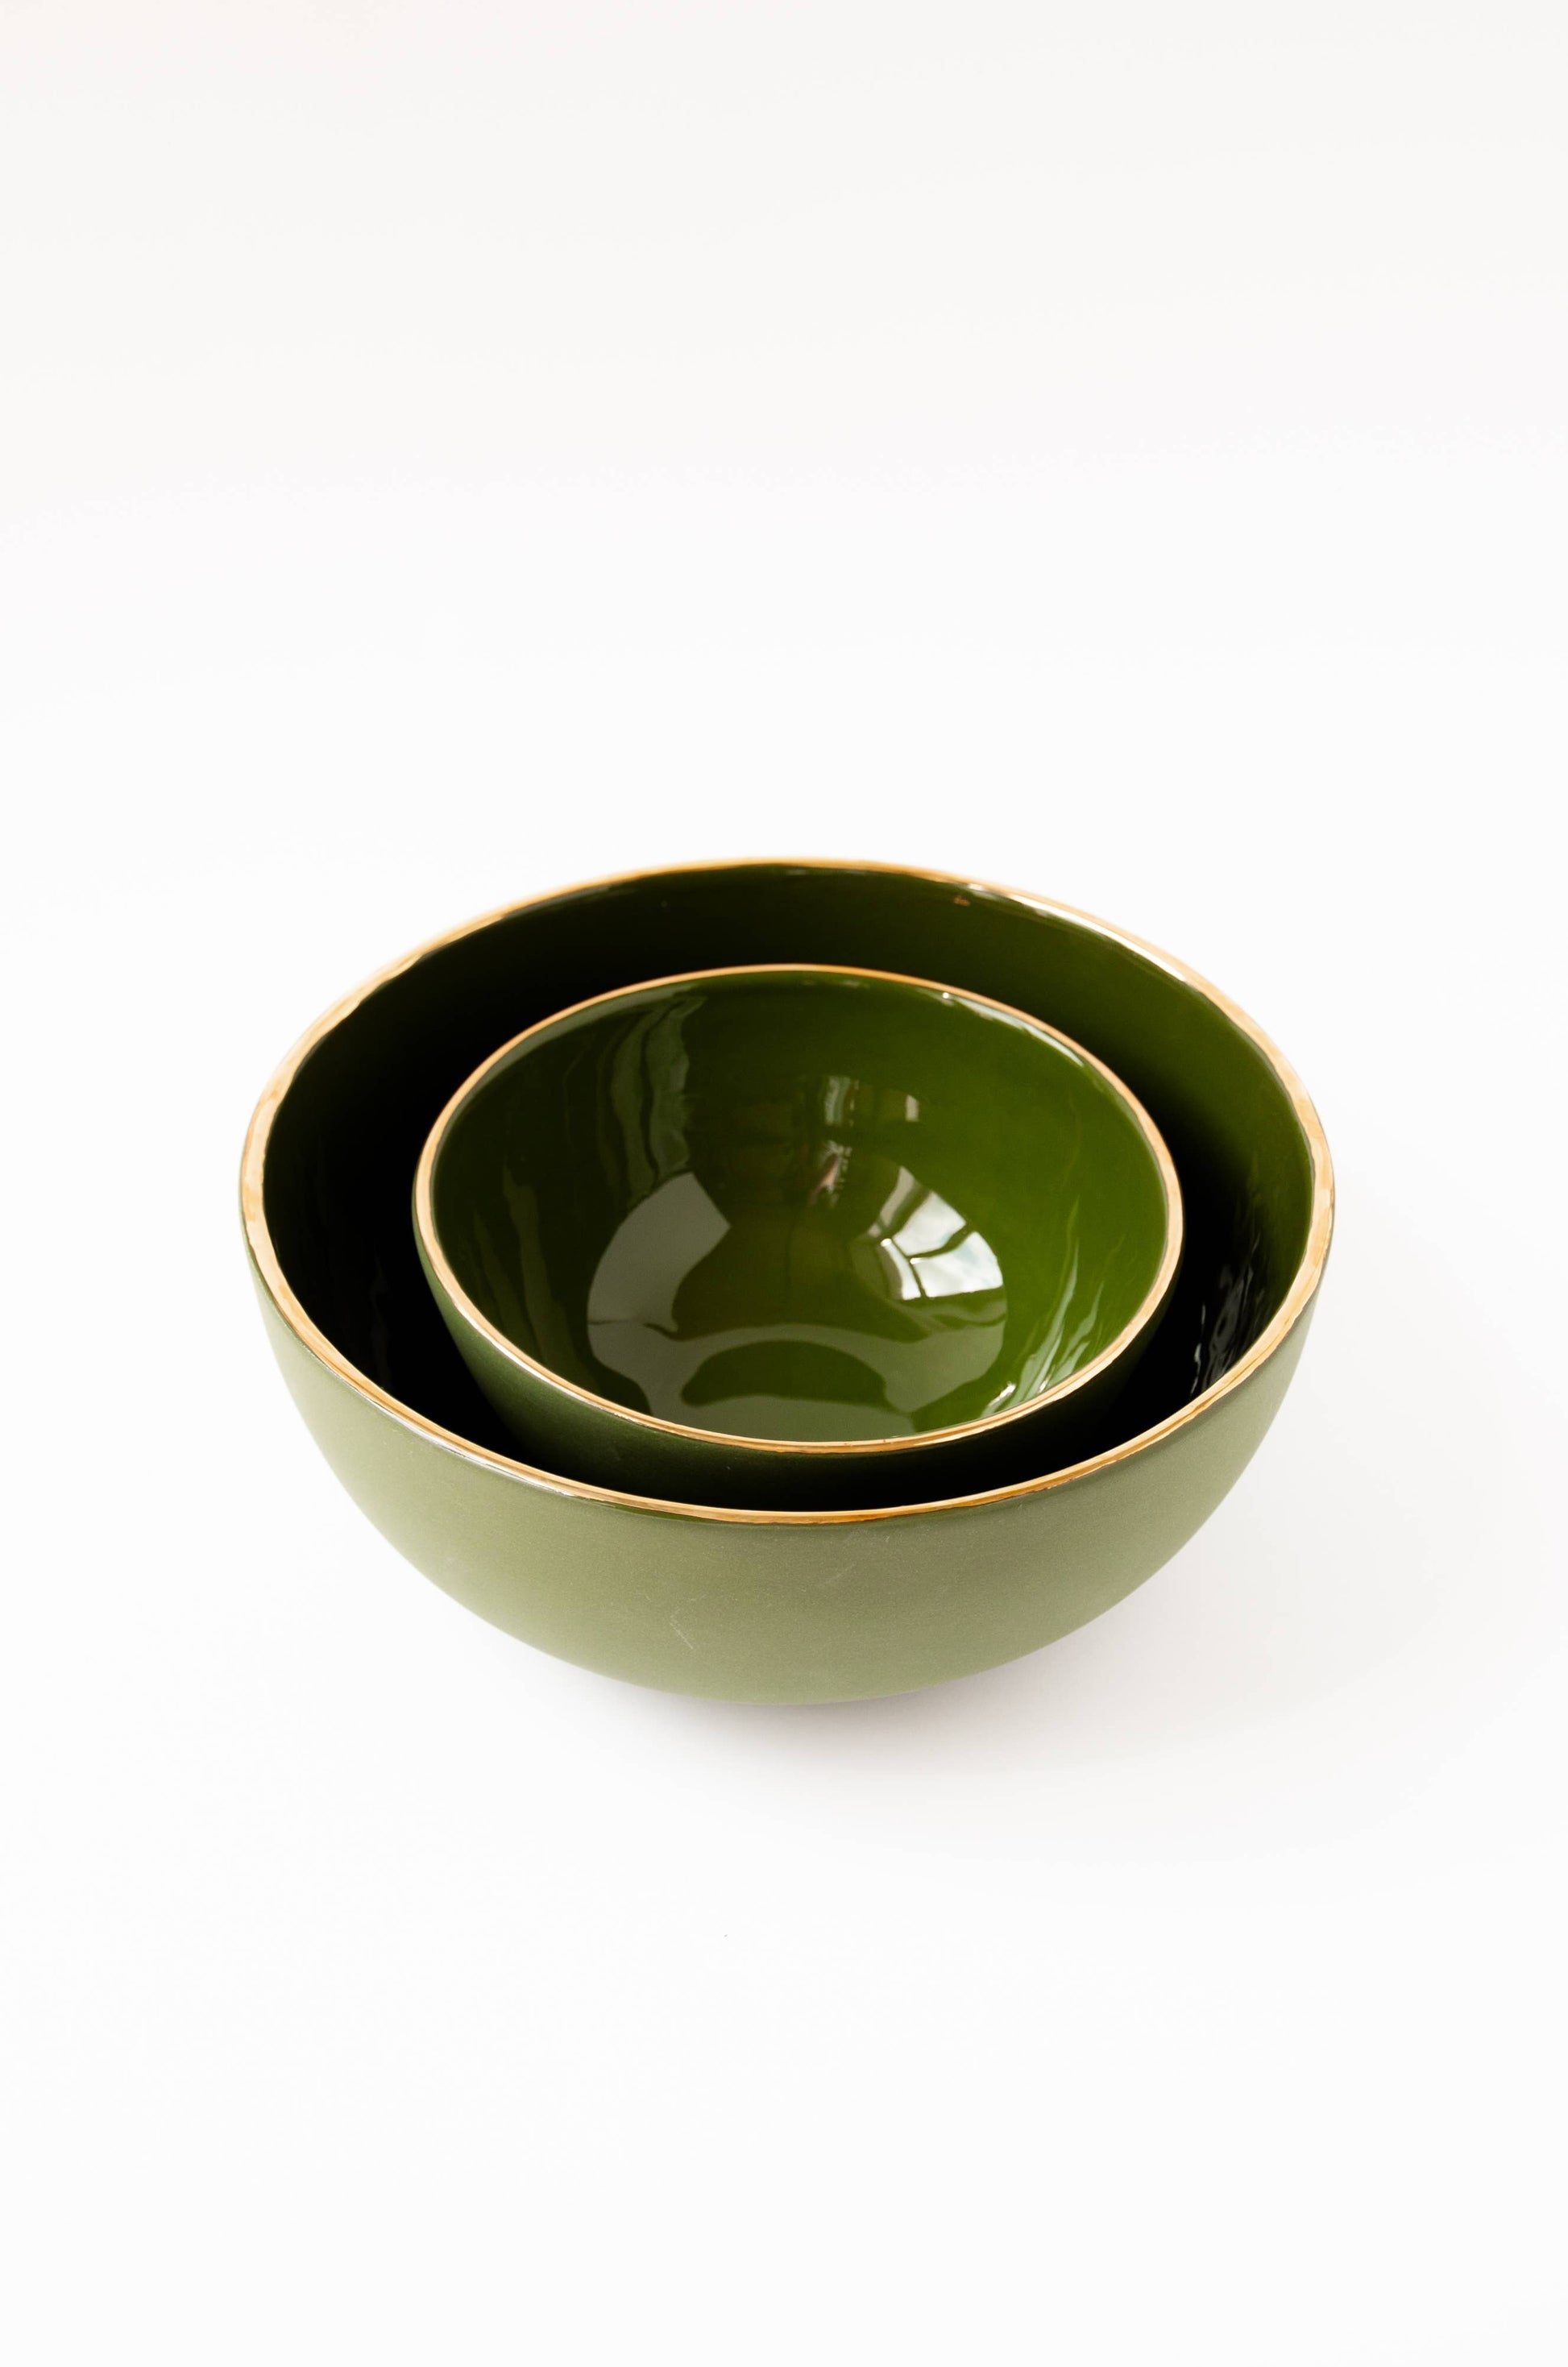 Ethical Trade Co Tabletop Handmade Ukrainian Porcelain Nesting Bowl Set